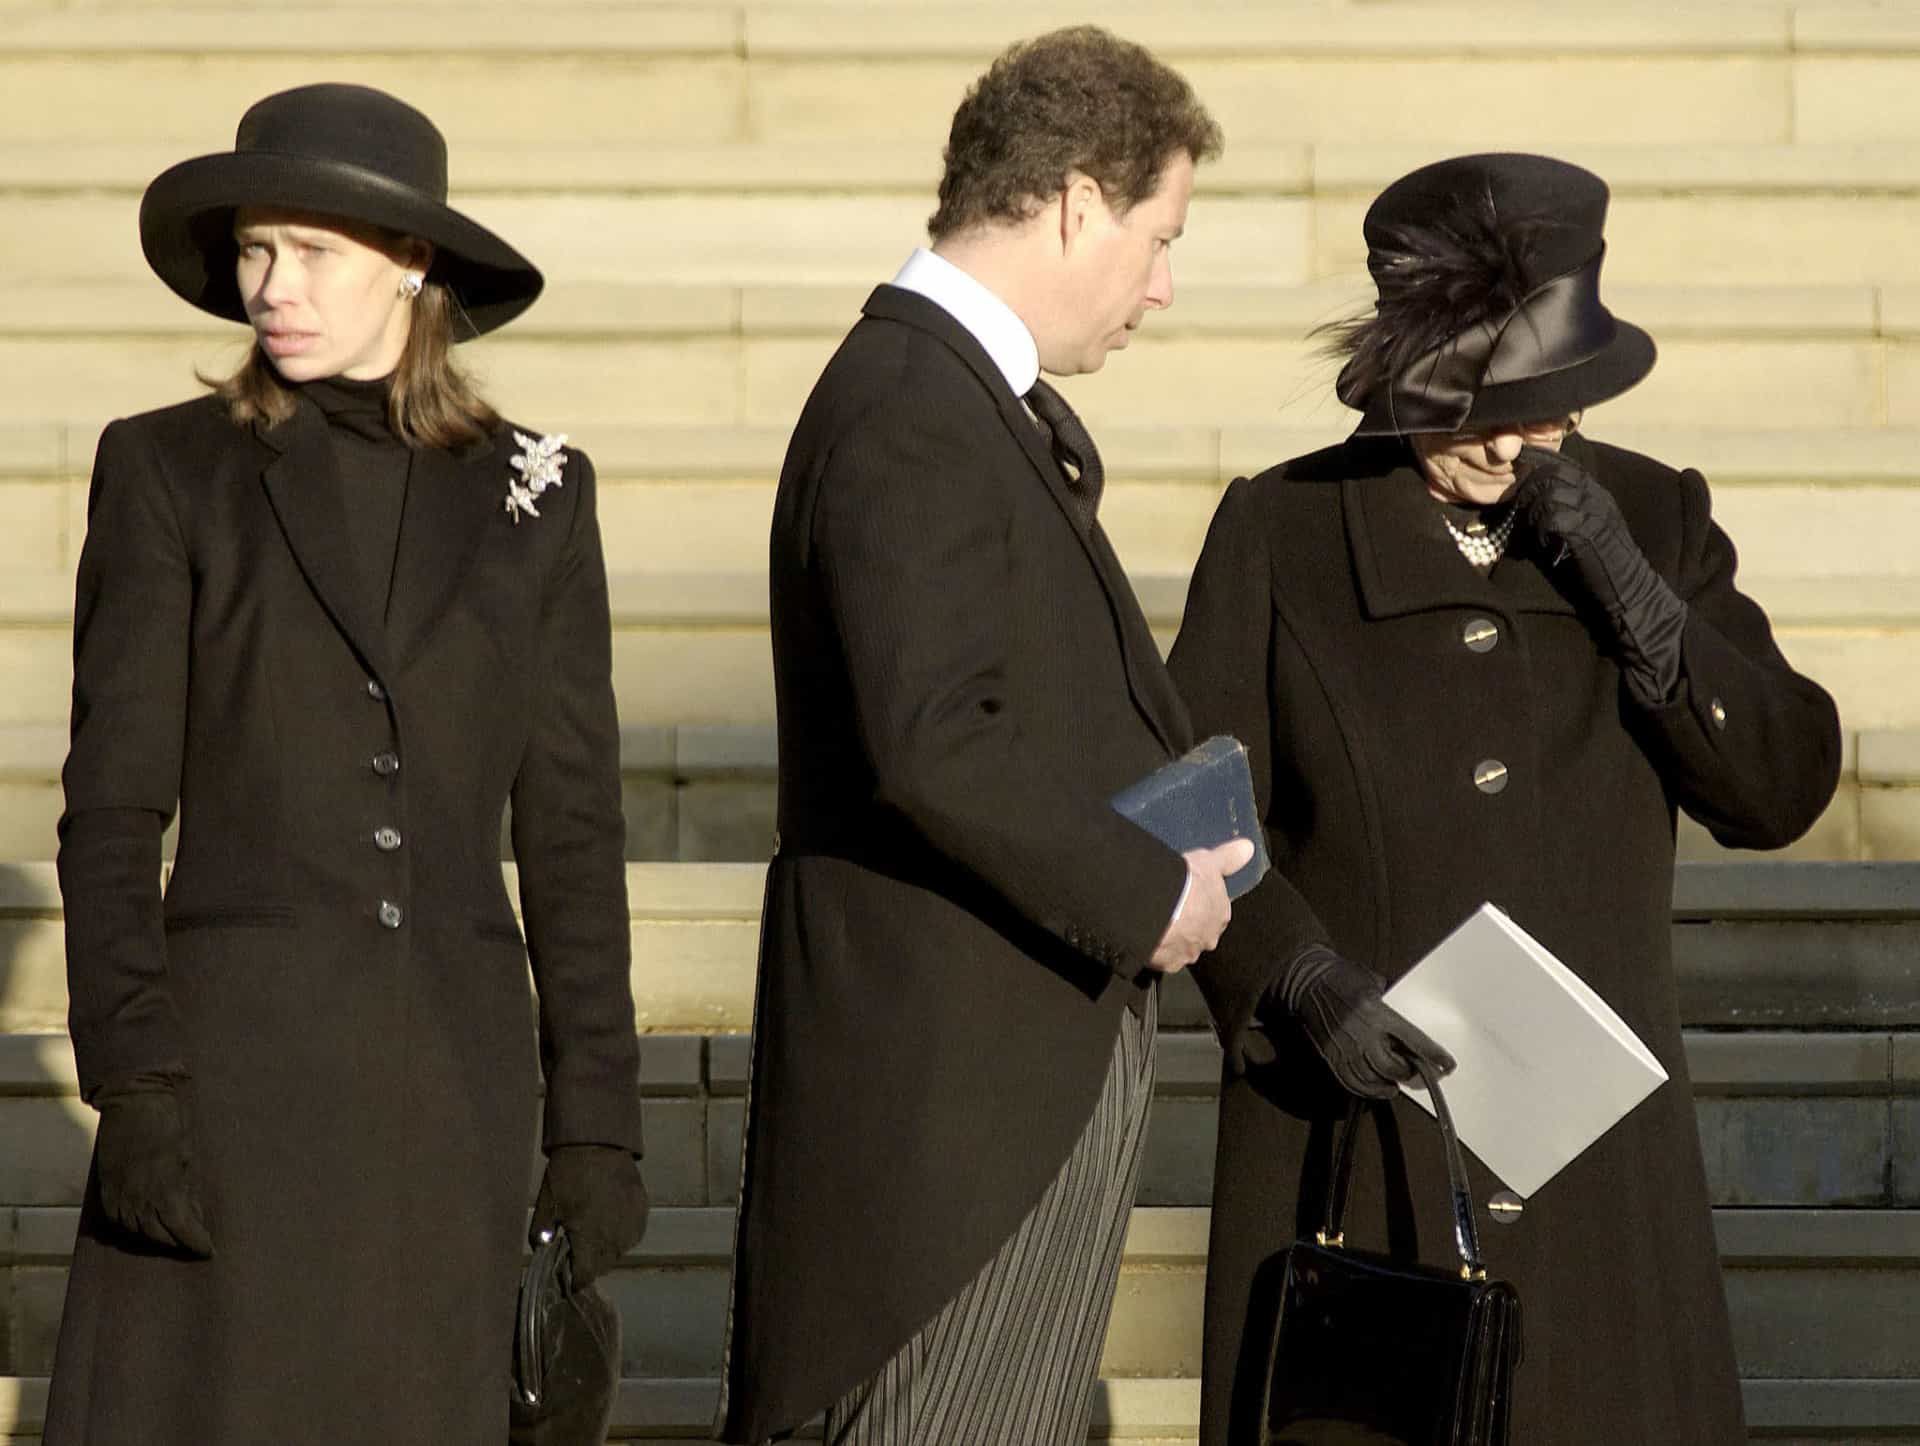 <p>Bei der Beerdigung ihrer Schwester wurde die Monarchin gesehen, wie sie sich die Tränen wegwischte – ein äußerst seltener öffentlicher Ausdruck von Rührung.</p><p>Entdecken Sie auch: <a href="https://de.starsinsider.com/promis/266065/lebenslange-liebe-koenigin-elisabeth-ii-und-prinz-philip">Lebenslange Liebe: Königin Elisabeth II. und Prinz Philip</a></p>